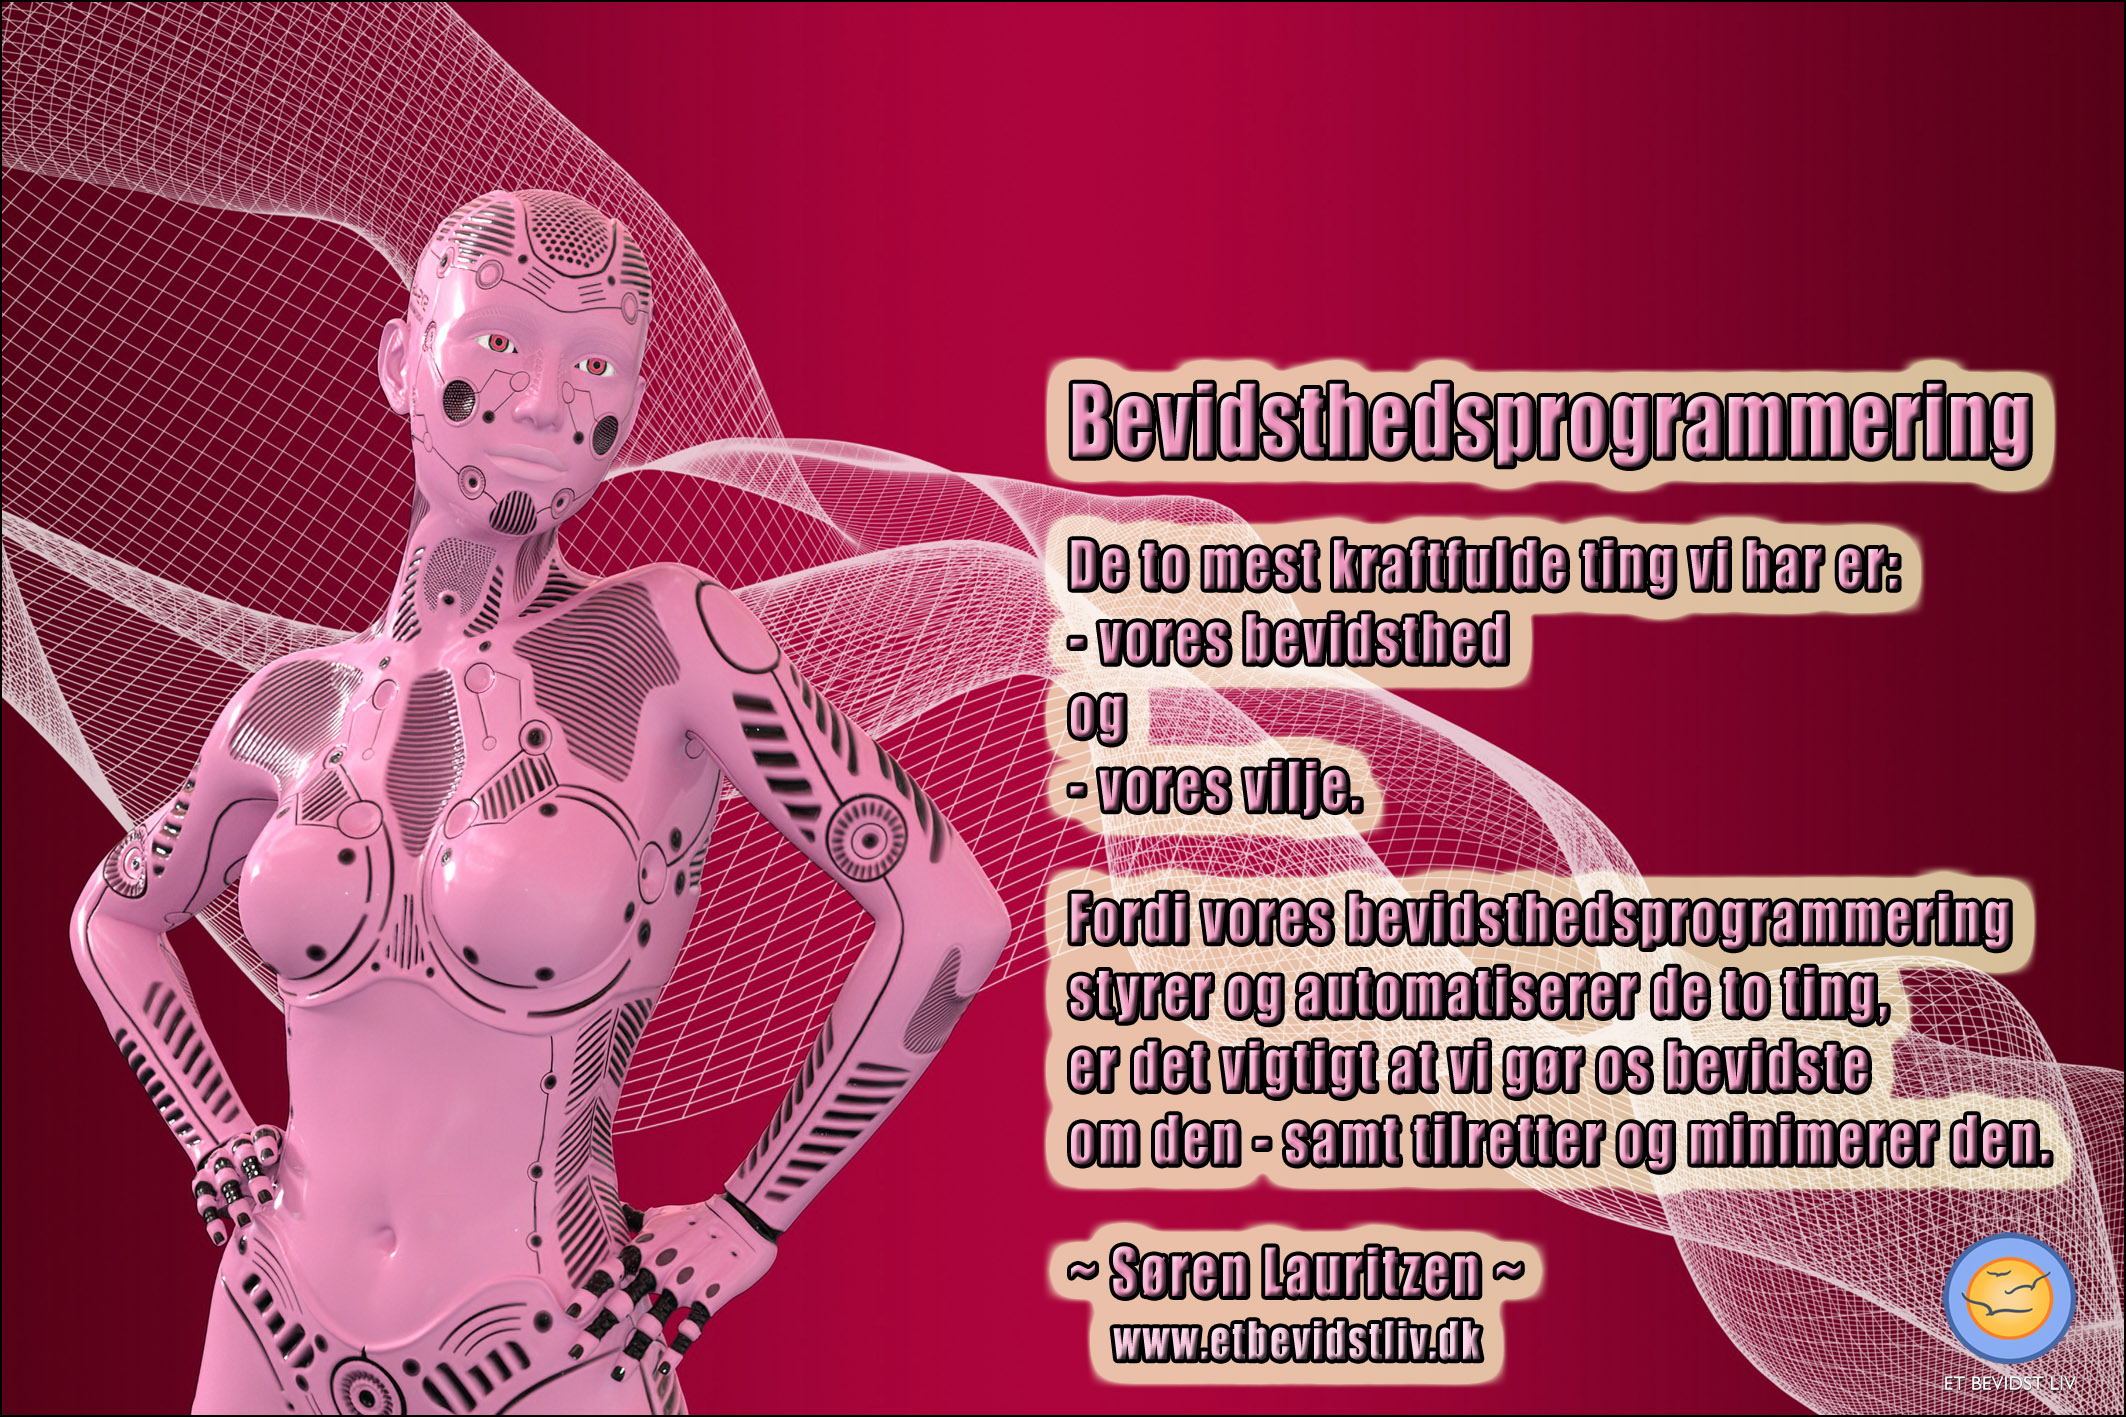 Illustration: Pink robot formet som en kvinde. Tekst: Bevidsthedsprogrammering styrer og automatiserer de to vigtigste ting vi har, nemlig vores bevidsthed og vores vilje, så det er vigtigt at bevidstgøre sig om den - samt tilrette og minimere den.